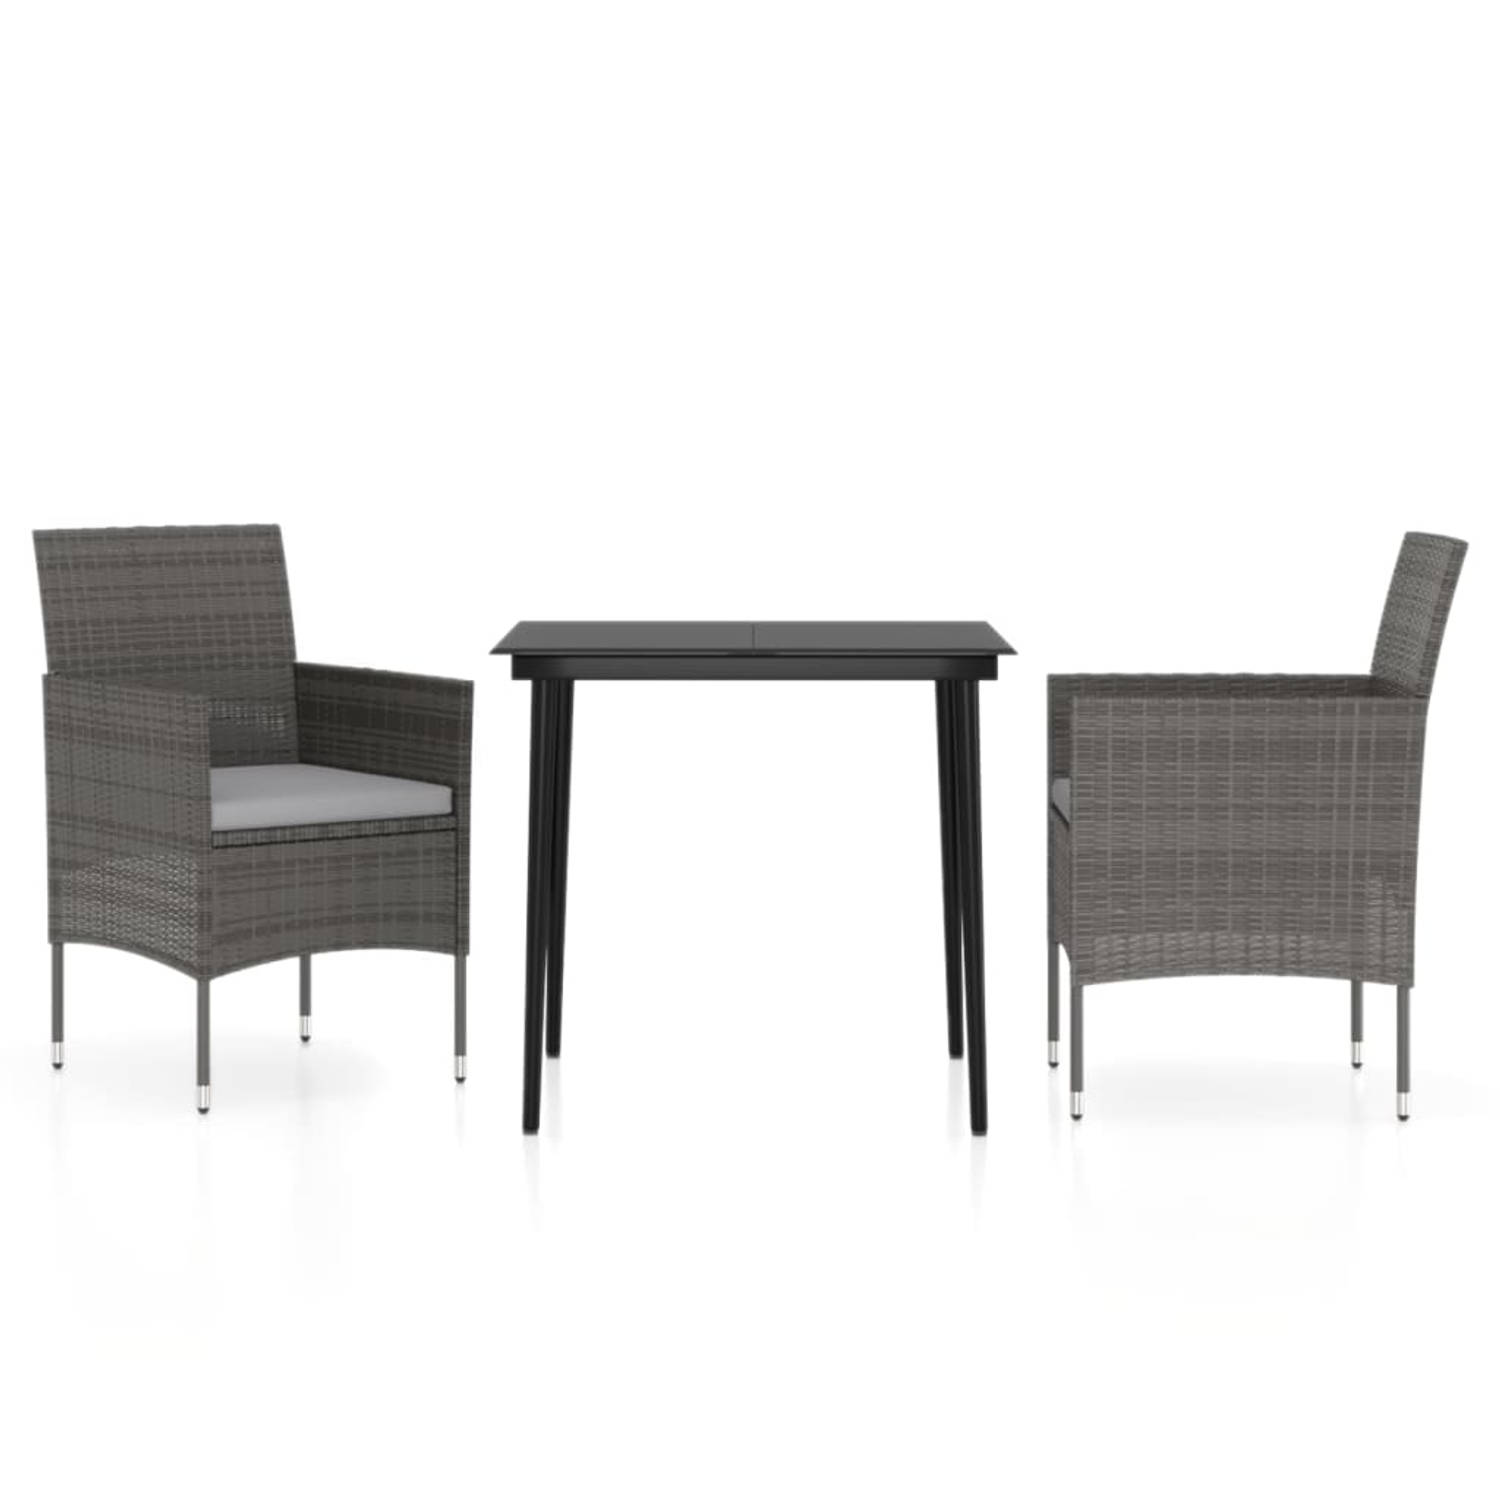 The Living Store Tuinset - - Afmetingen- 80x80x74 cm (tafel) - 53x58x84 cm (stoel) - Kleur- grijs en zwart - Materiaal- PE-rattan - staal - glas - Montage vereist - Inclusief- 1 ta